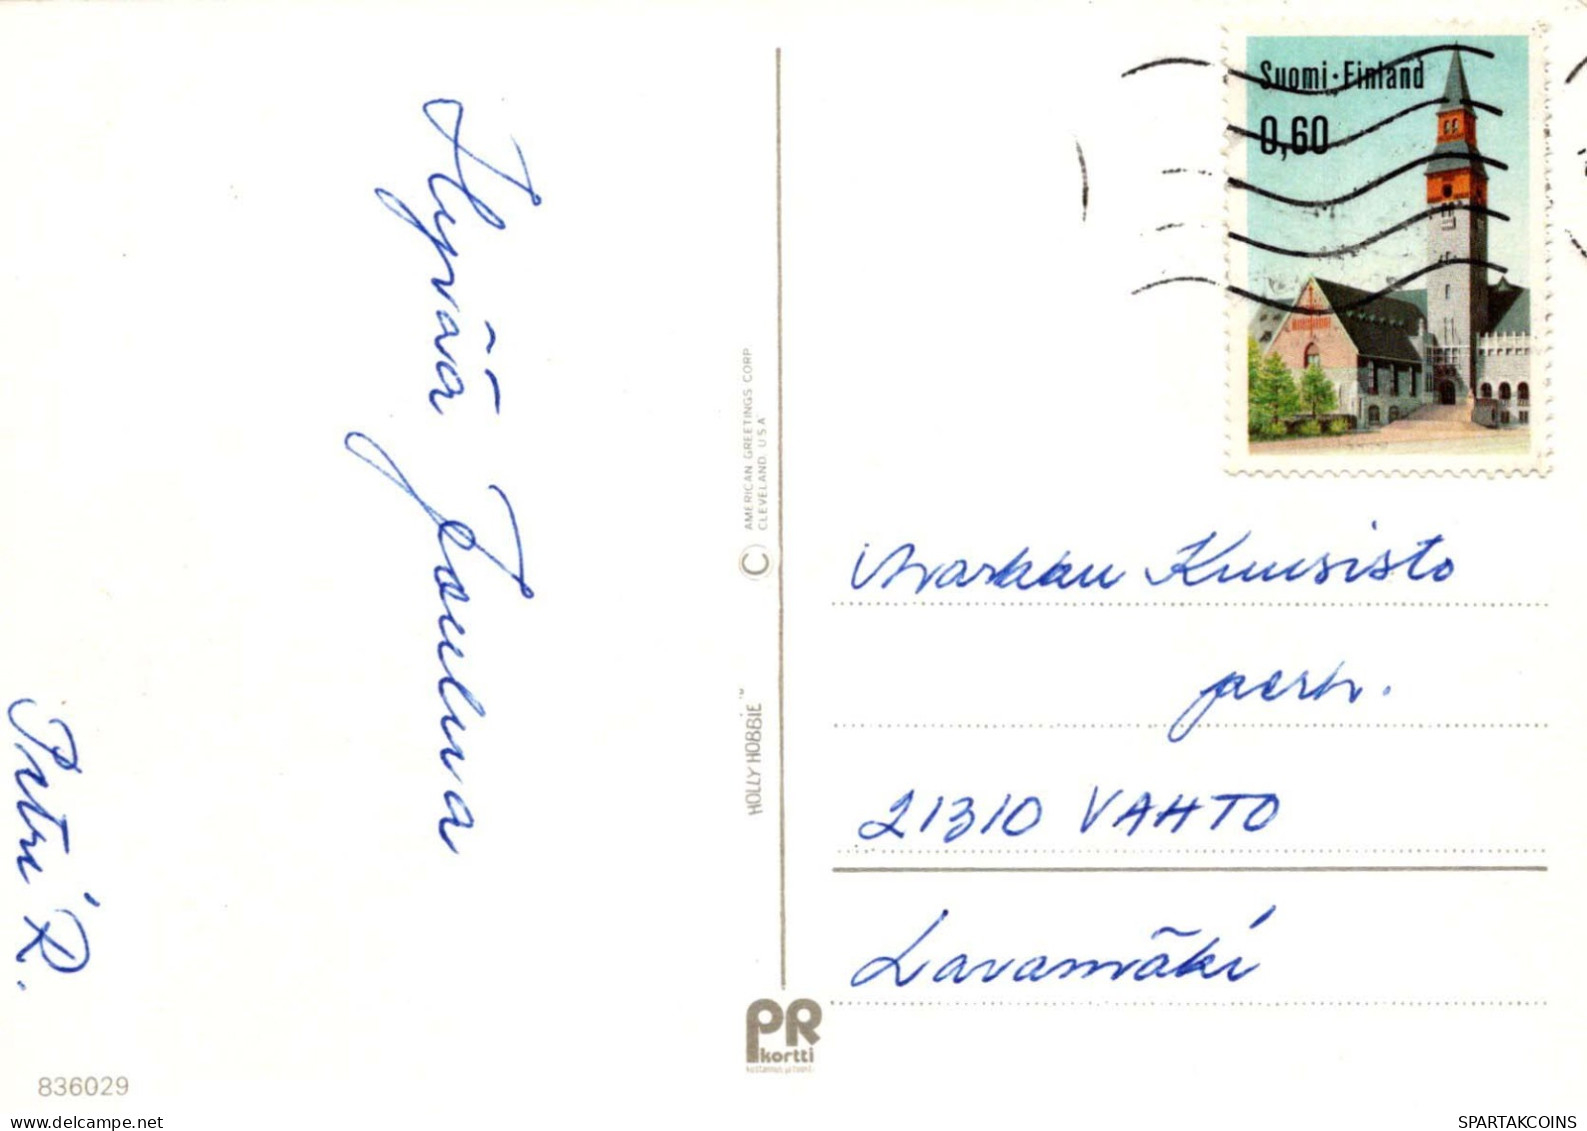 KINDER Szene Landschaft Vintage Ansichtskarte Postkarte CPSM #PBB391.DE - Scènes & Paysages